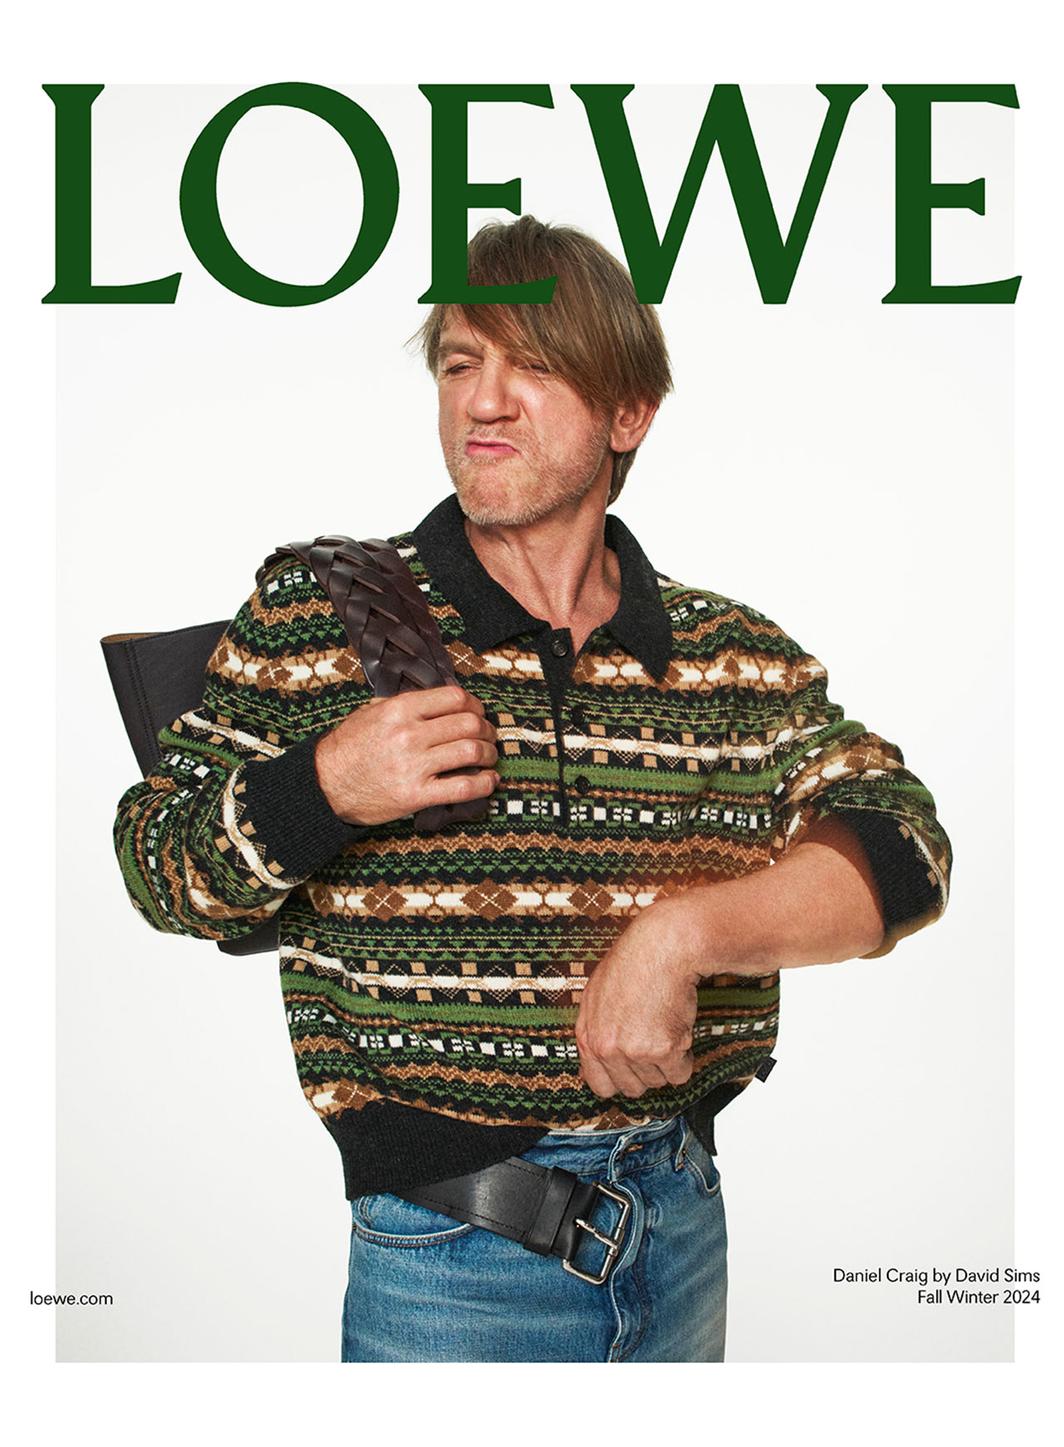 Loewe, marque de mode la plus populaire selon le Lyst Index